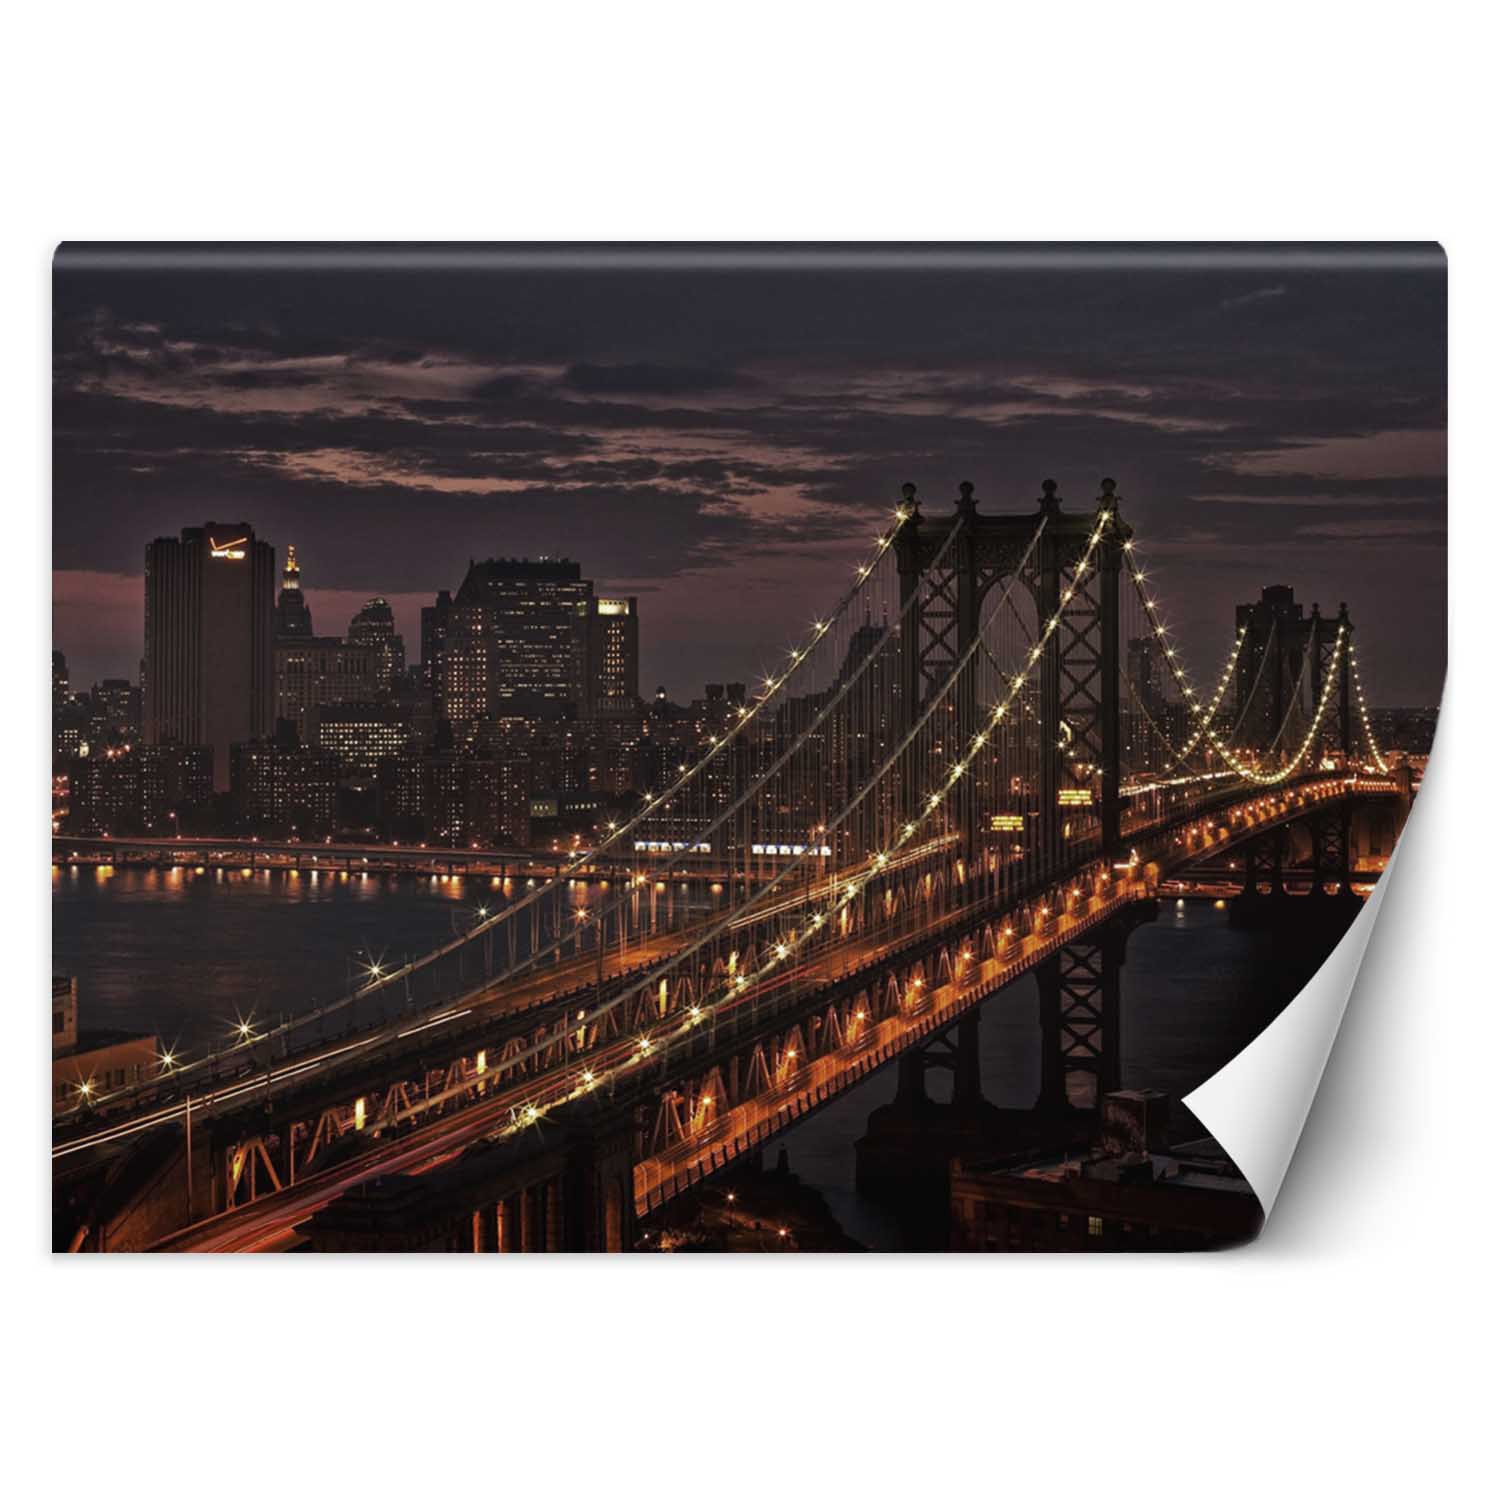 Trend24 – Behang – New York City Bridge – Vliesbehang – Fotobehang – Behang Woonkamer – 400x280x2 cm – Incl. behanglijm